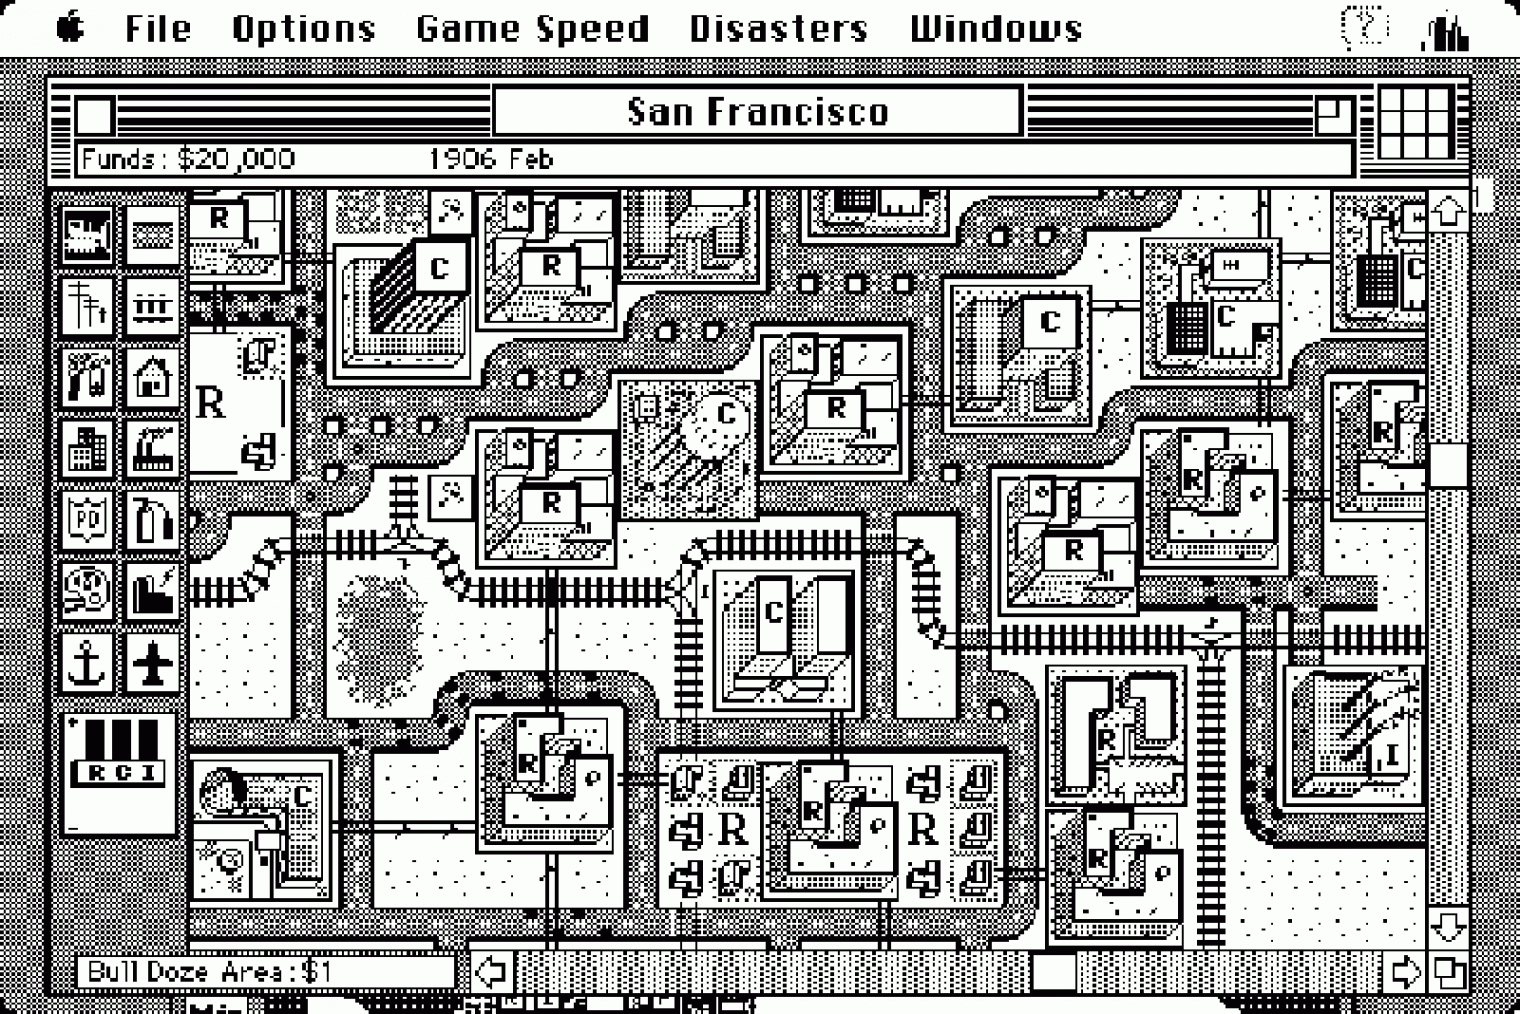 A SimCity 1989-es, Maces változata, fekete-fehérben is egész jól kinéző grafikával